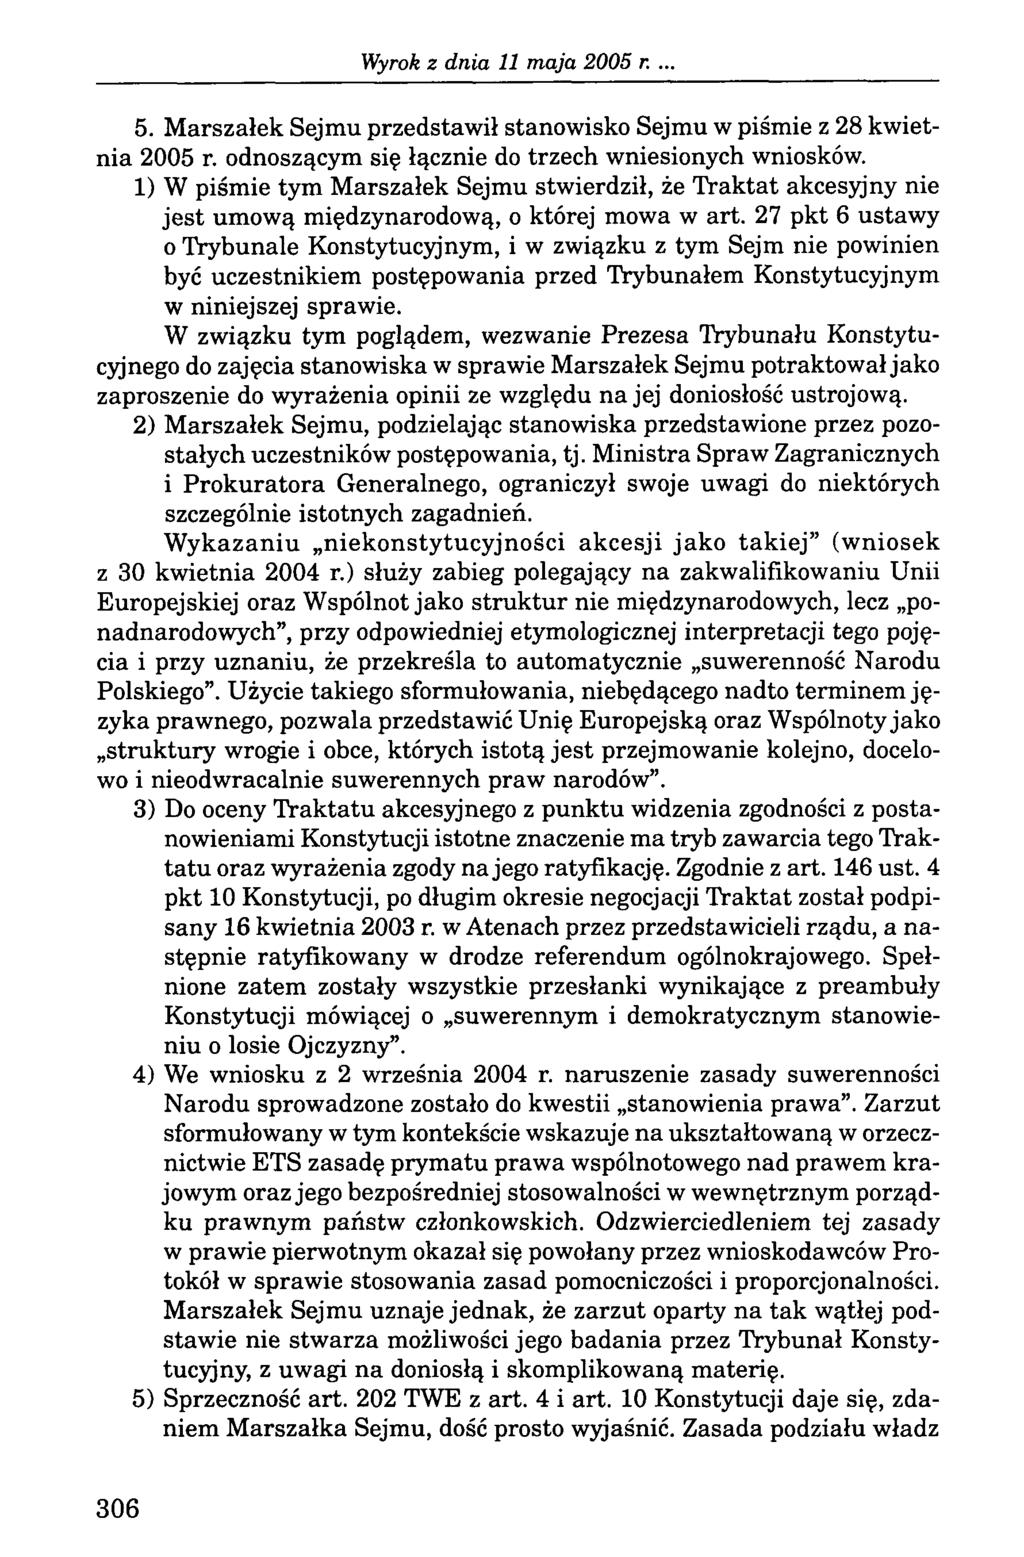 . 5. Marszałek Sejmu przedstawił stanowisko Sejmu w piśmie z 28 kwietnia 2005 r. odnoszącym się łącznie do trzech wniesionych wniosków.